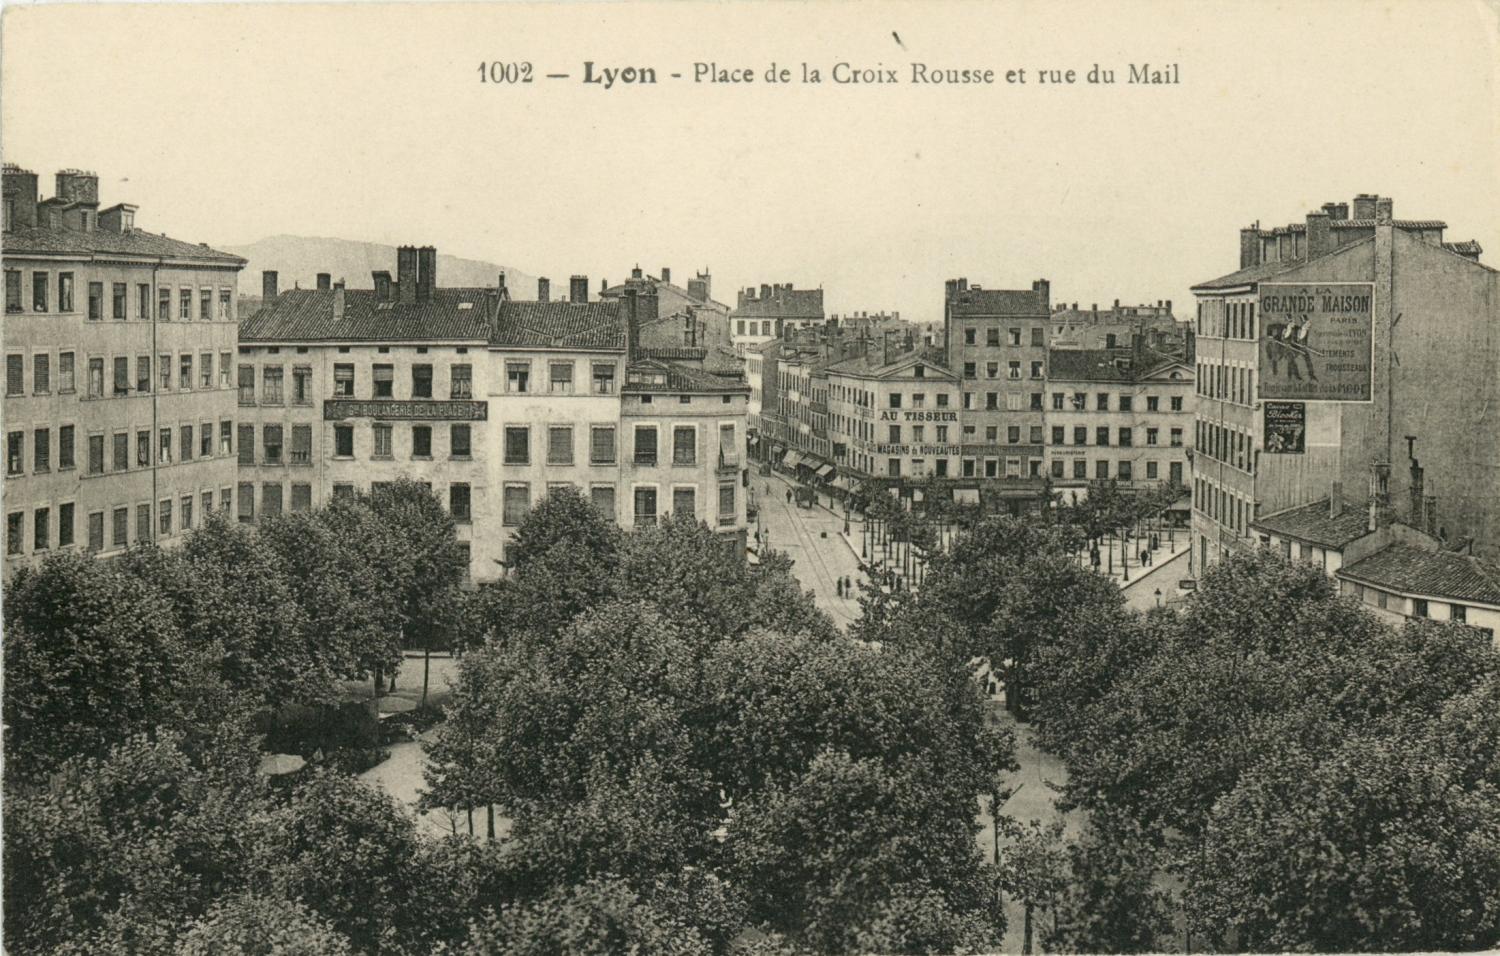 Lyon : Place de la Croix Rousse et rue du Mail.